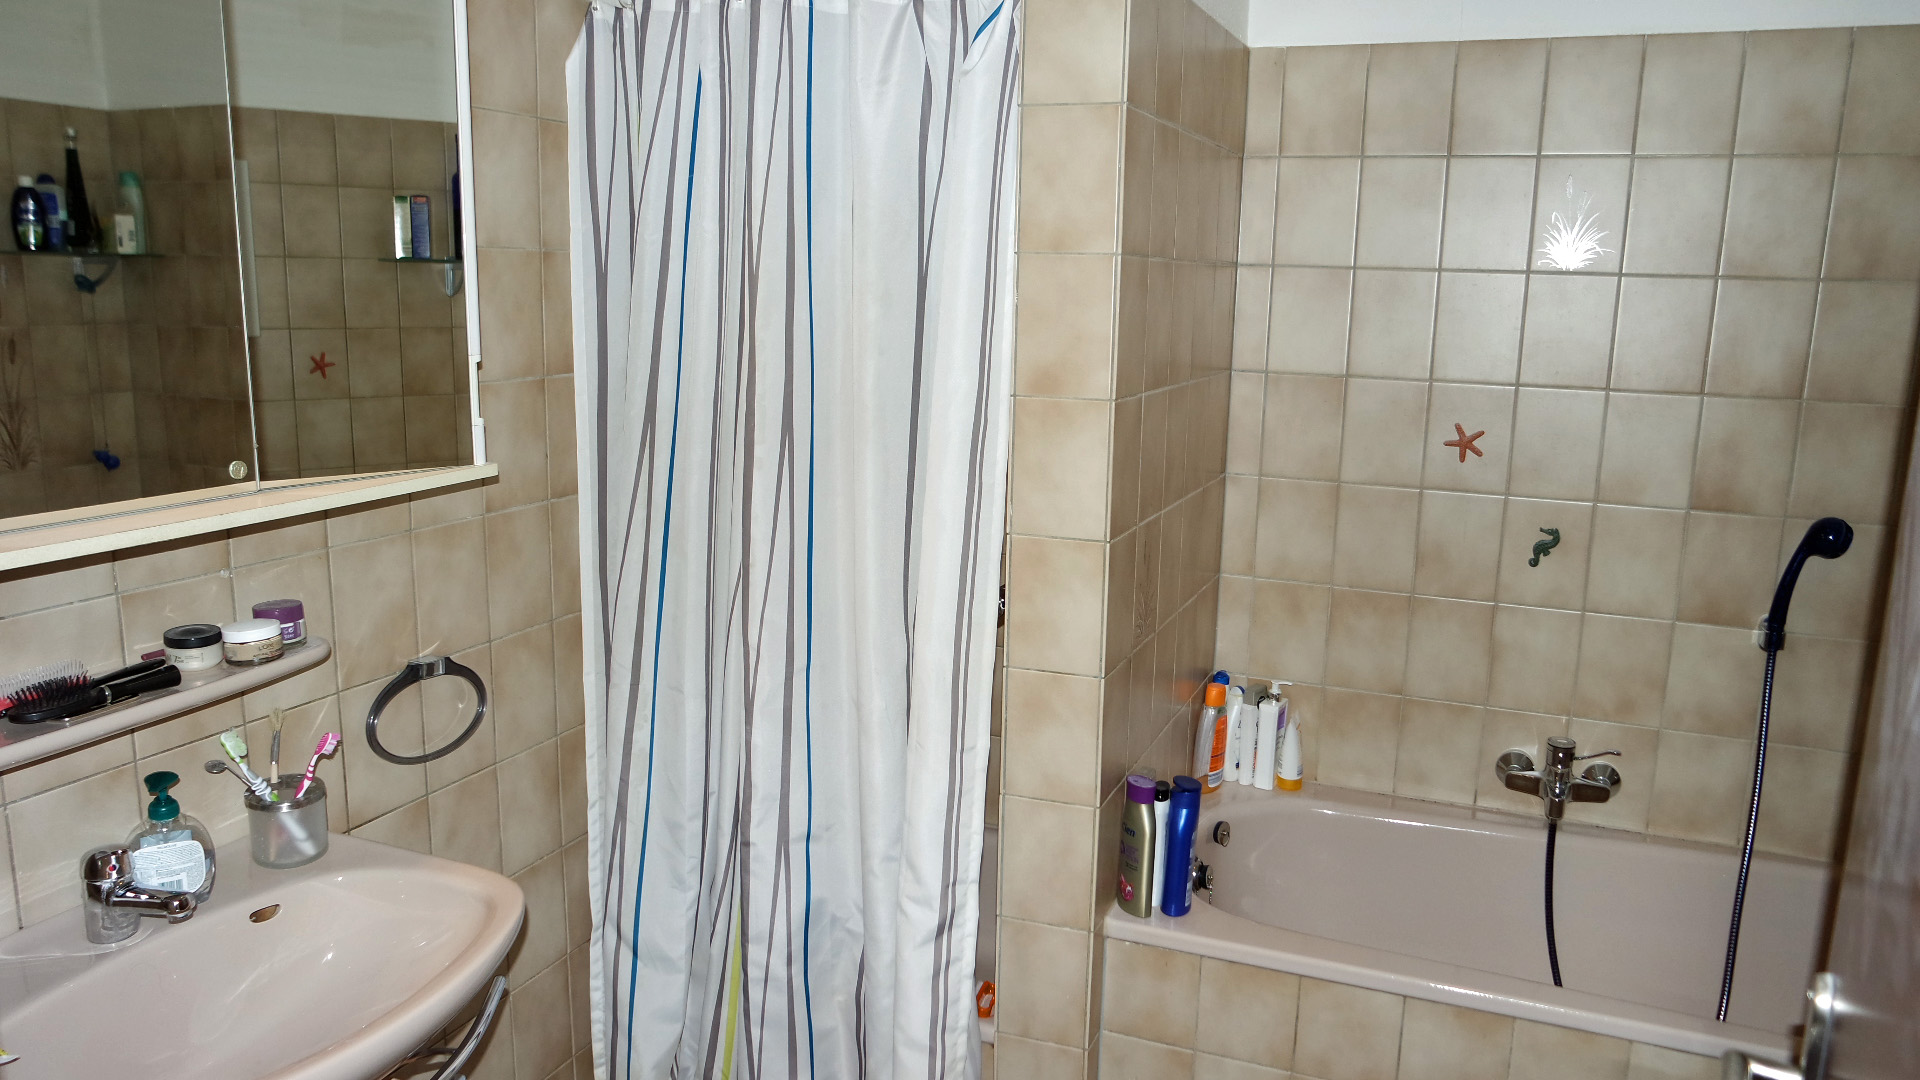 Schön und ruhig in Friesenhagen gelegen: Reihenhaus mit Appartement und Garage, Bad mit Dusche und Wanne im Dachgeschoss